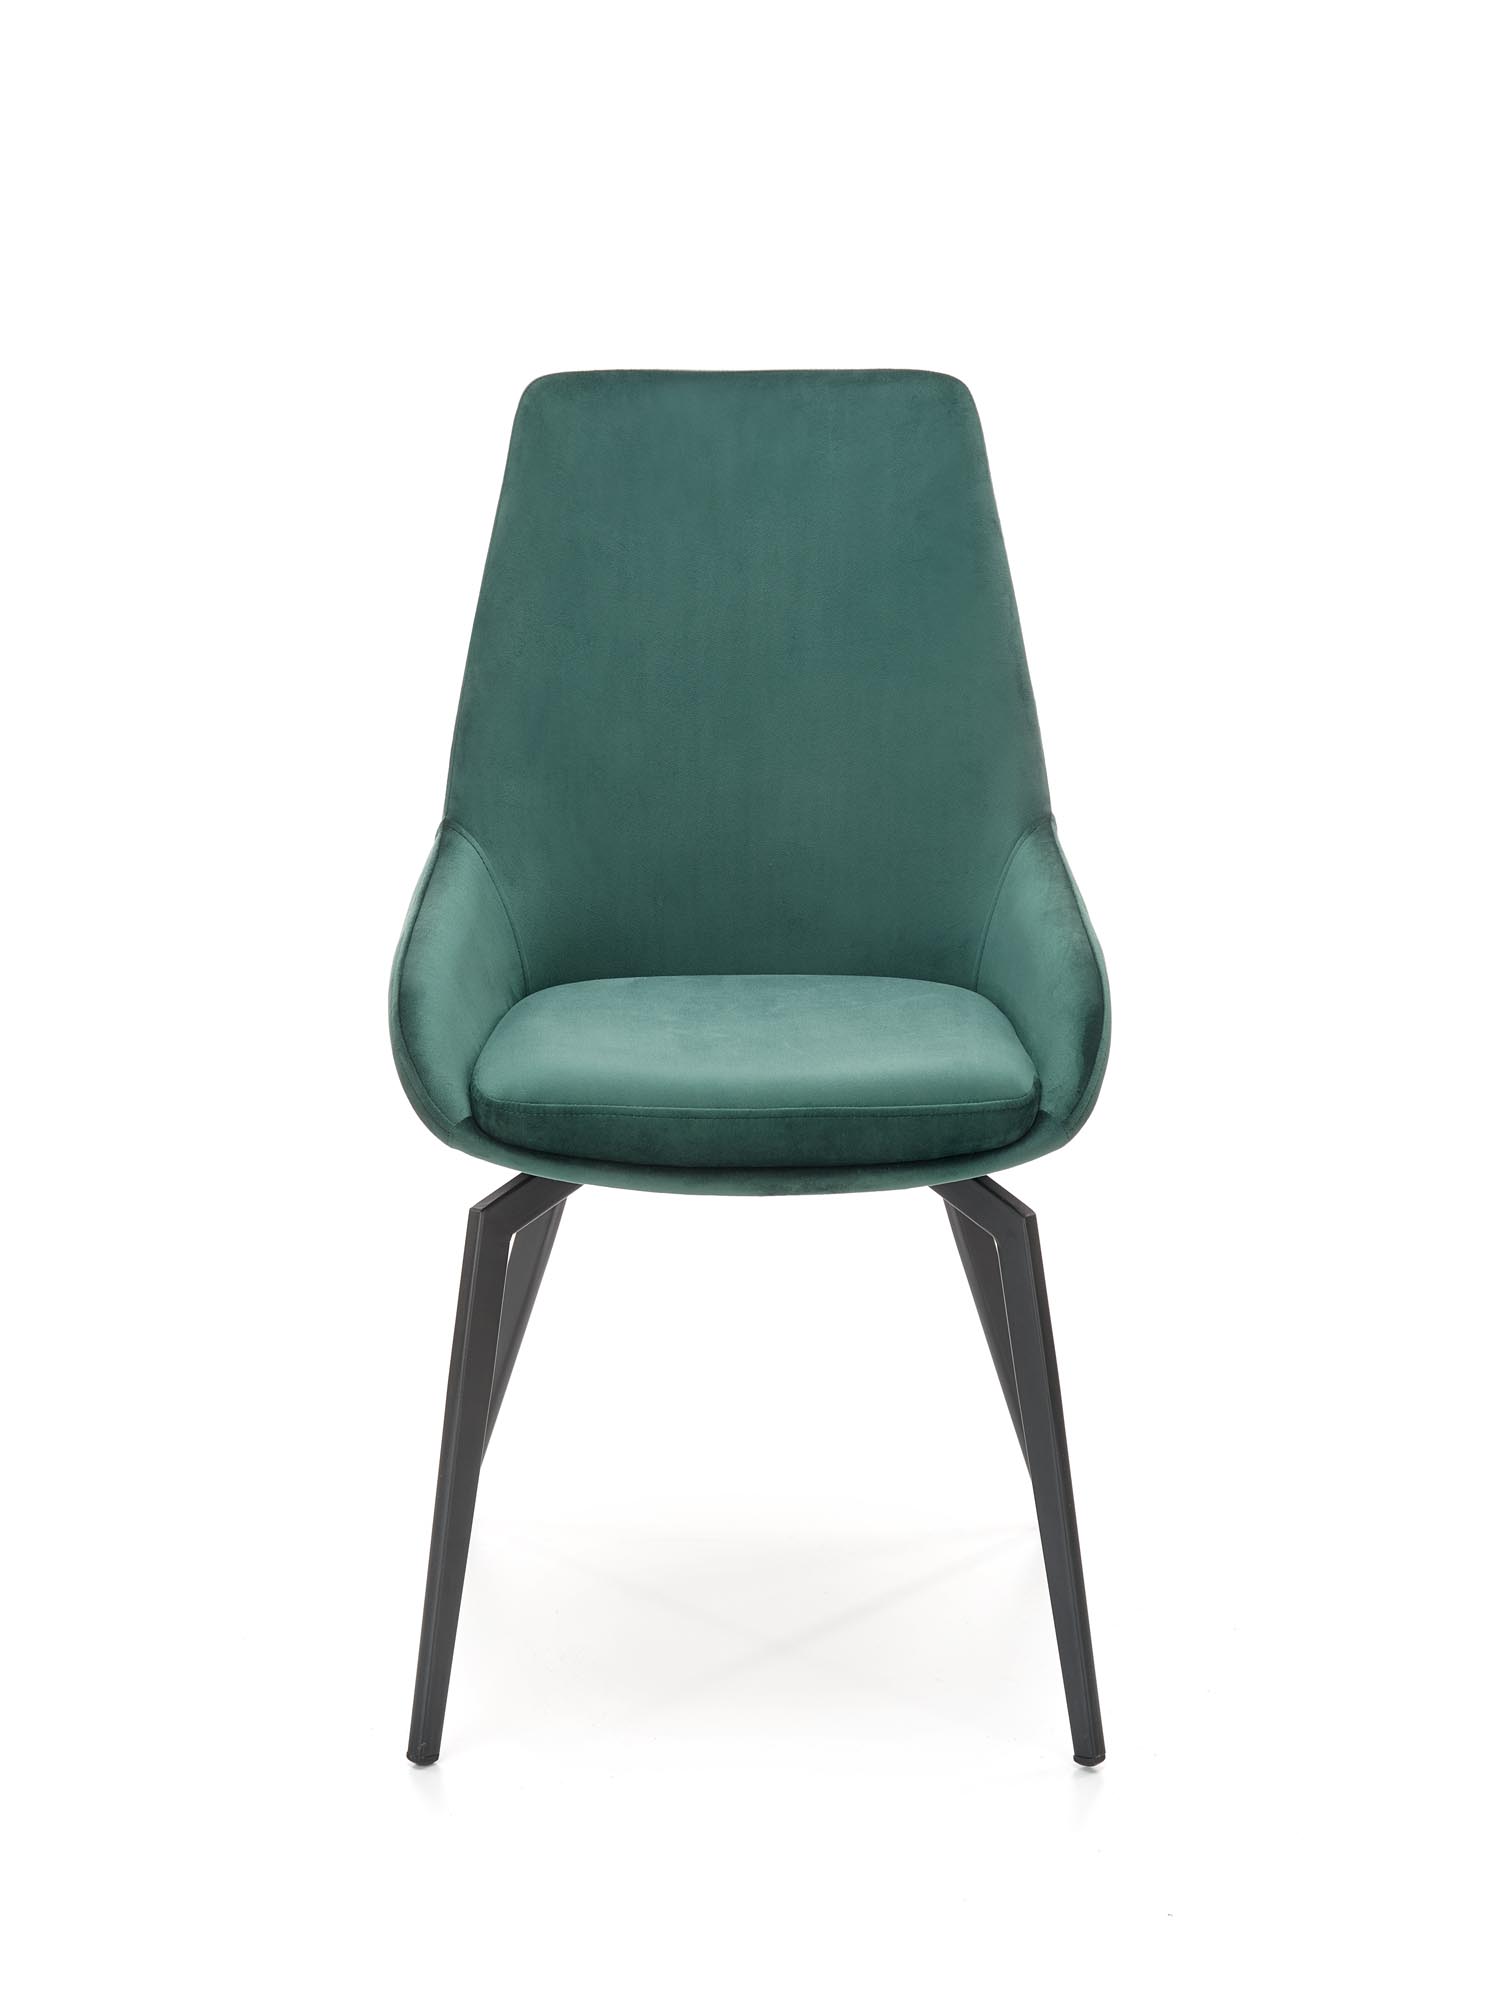 K479 Židle tmavý Zelený k479 Židle tmavý Zelený